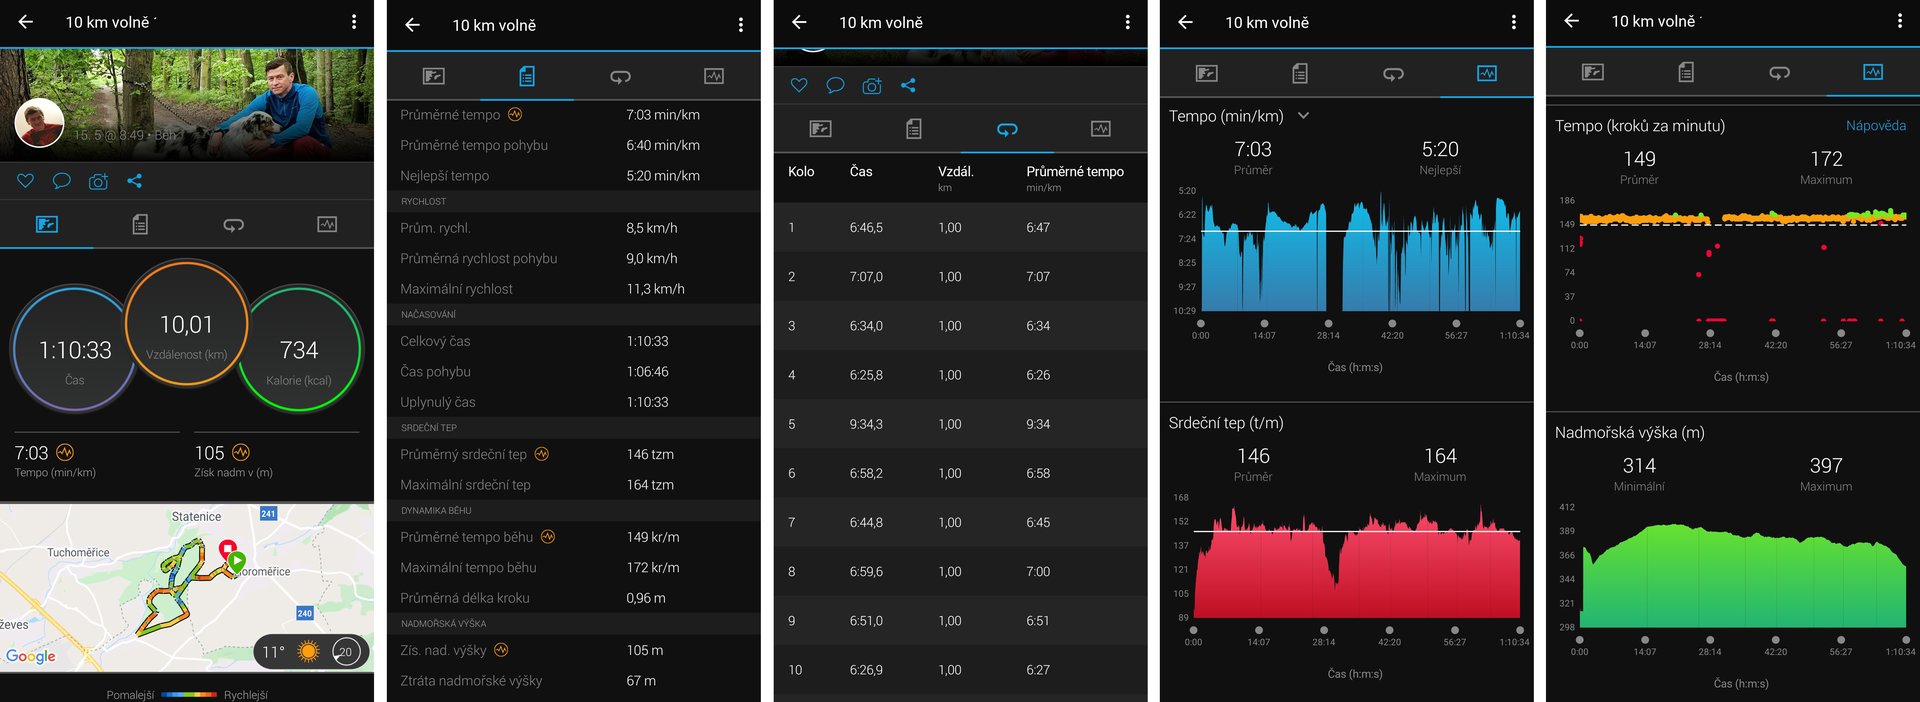 Aplikace Garmin - běh 10 km